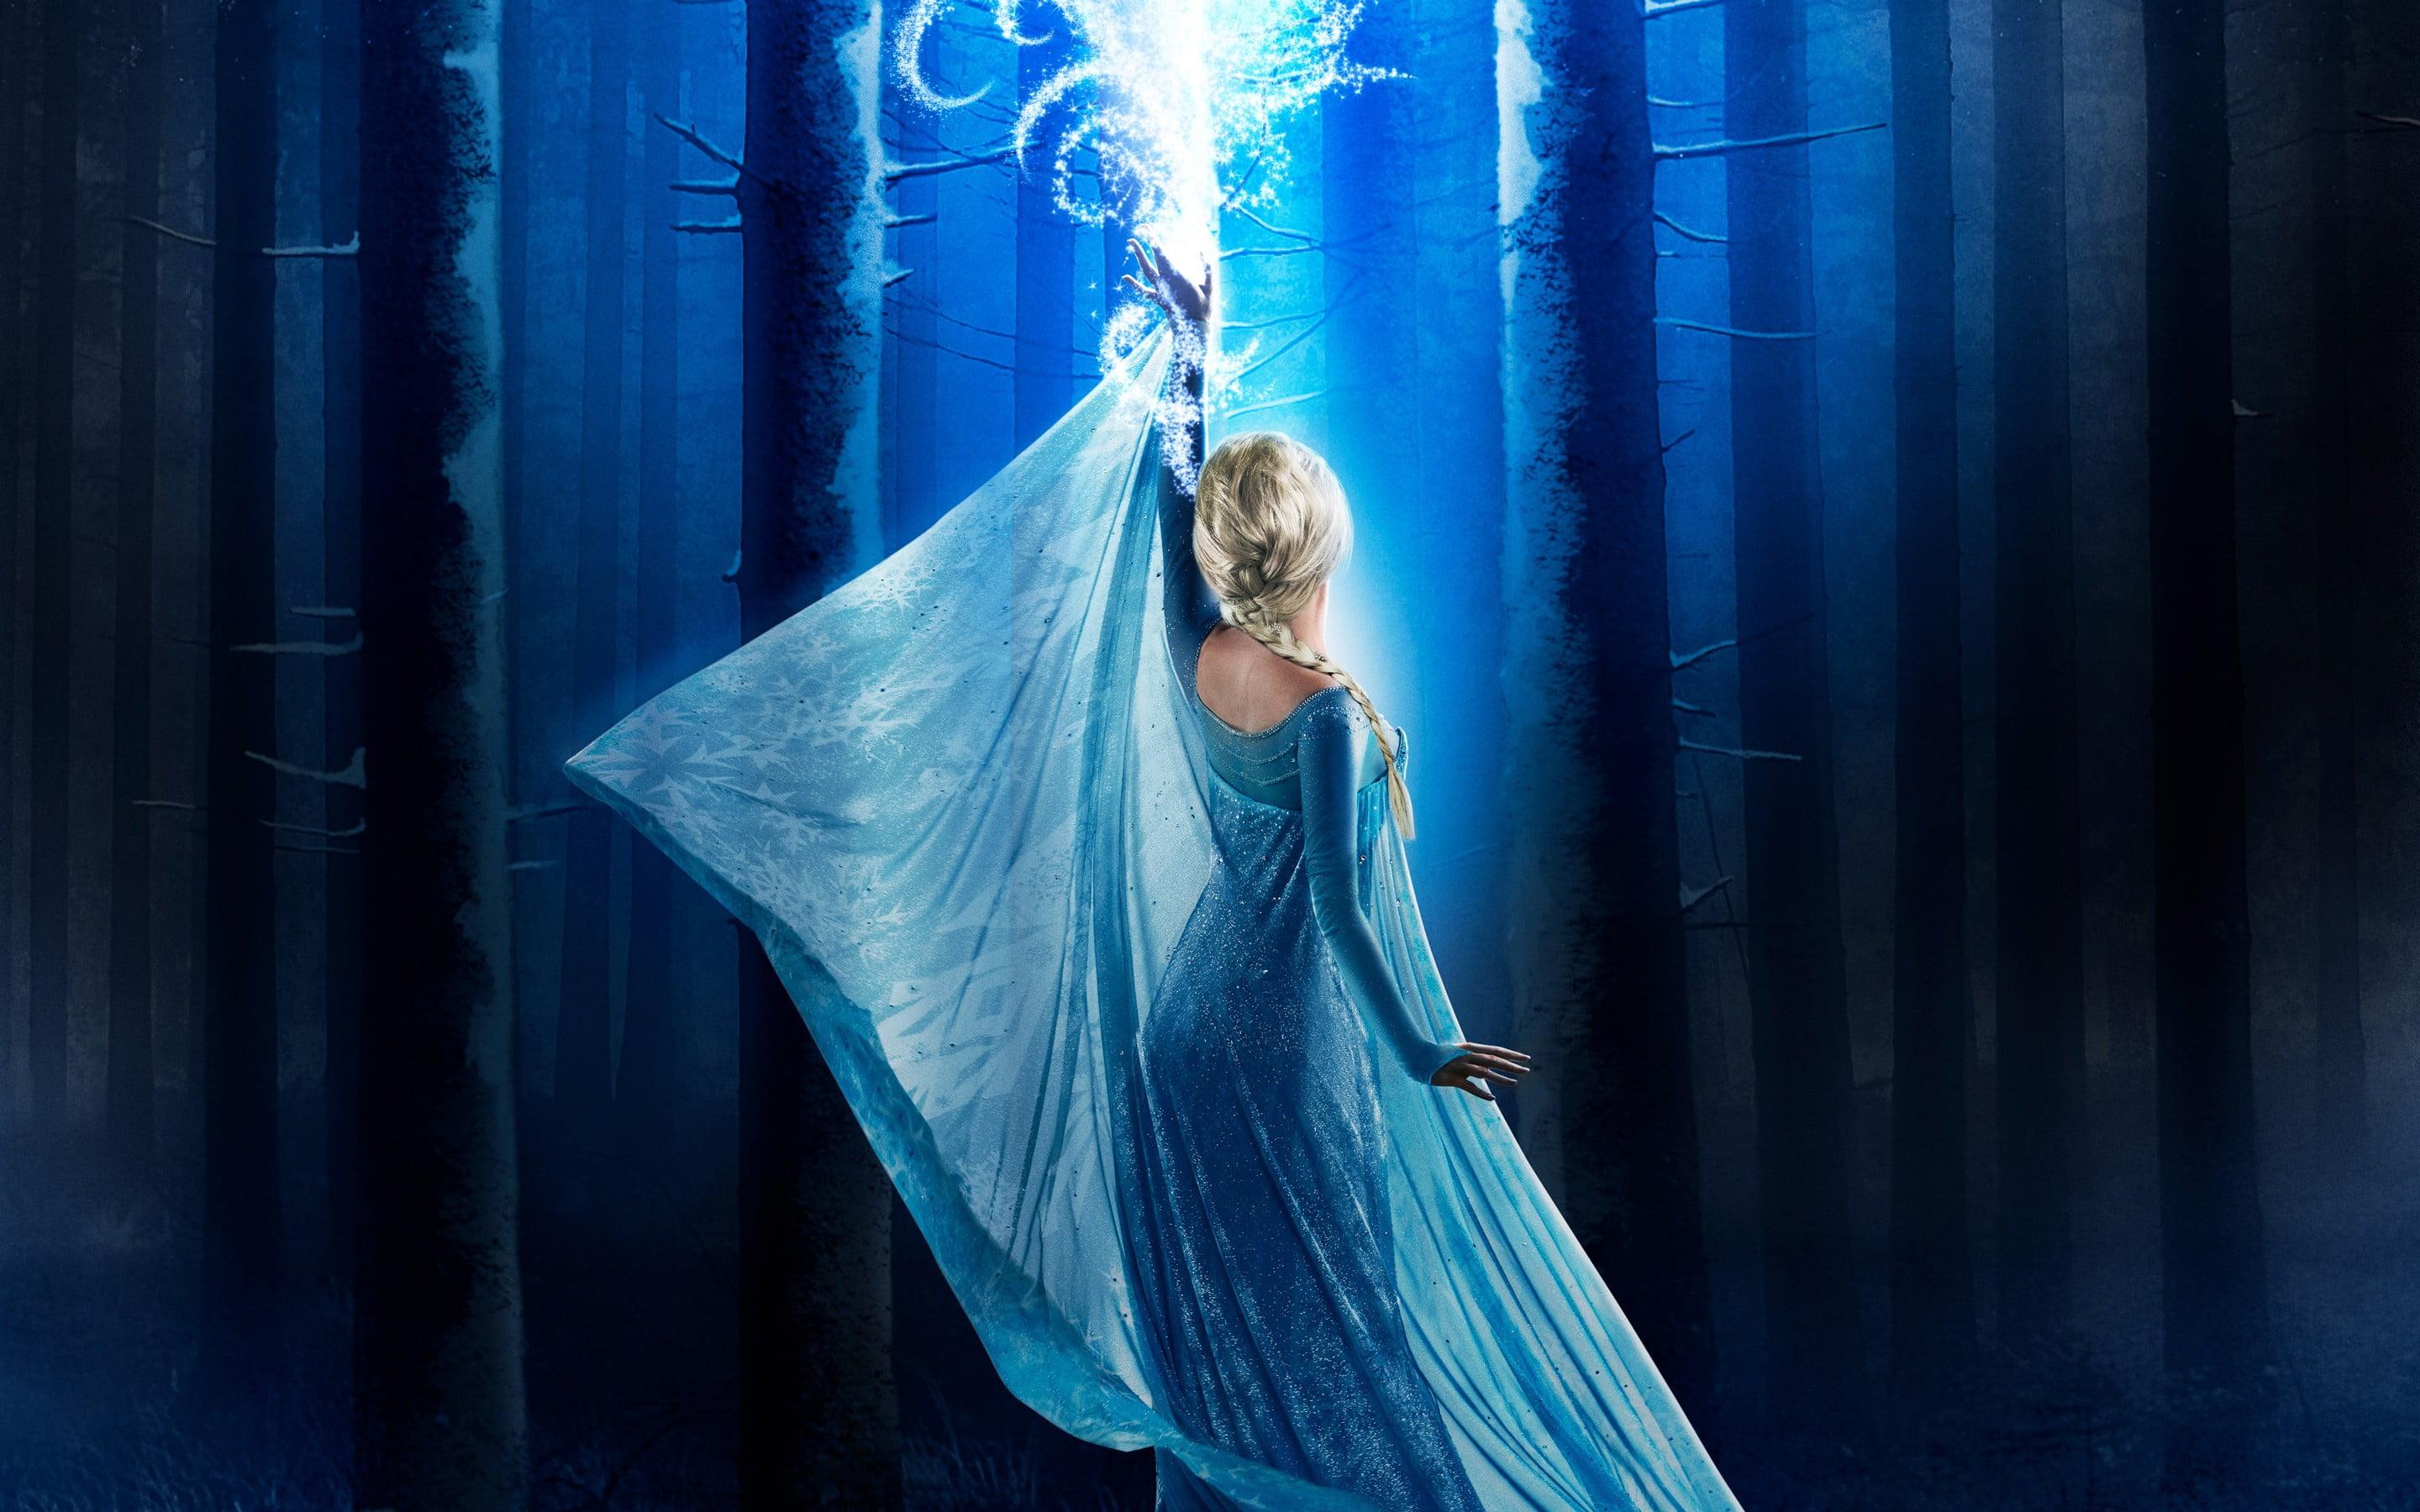 Disney Frozen Elsa digital wallpaper, Princess Elsa, Once